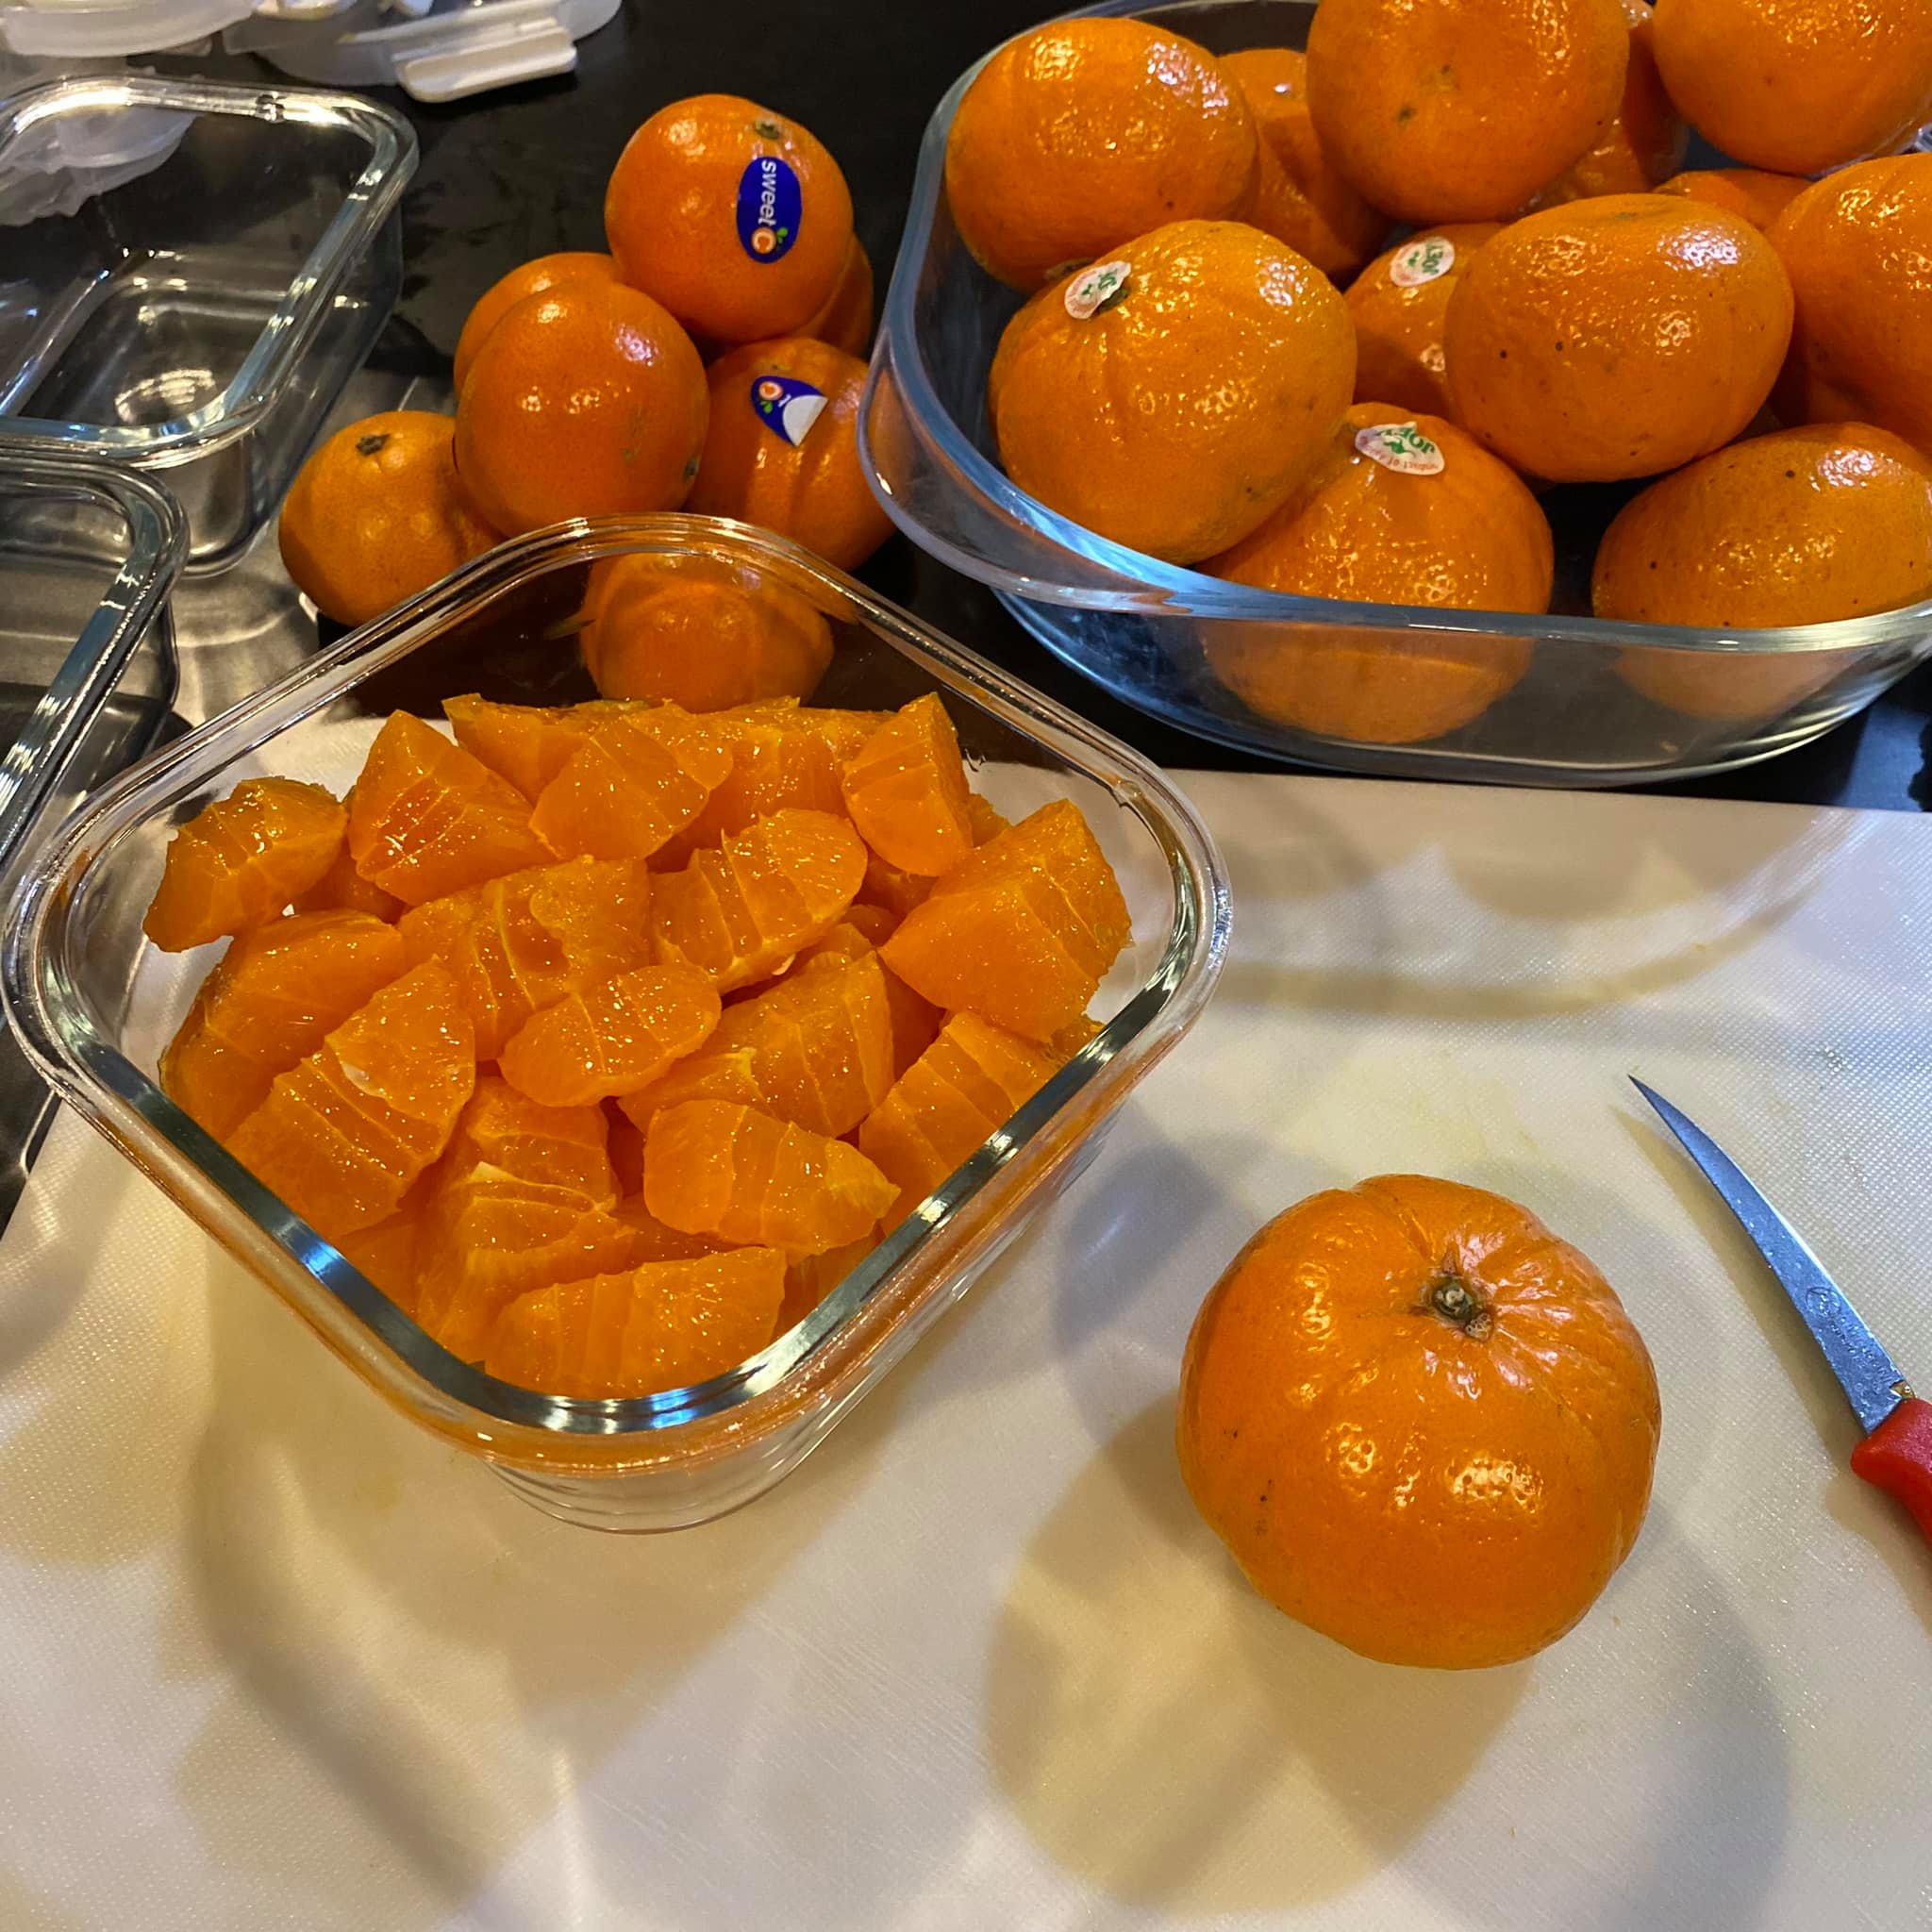 ปอกส้มยังไงให้น่าทาน2